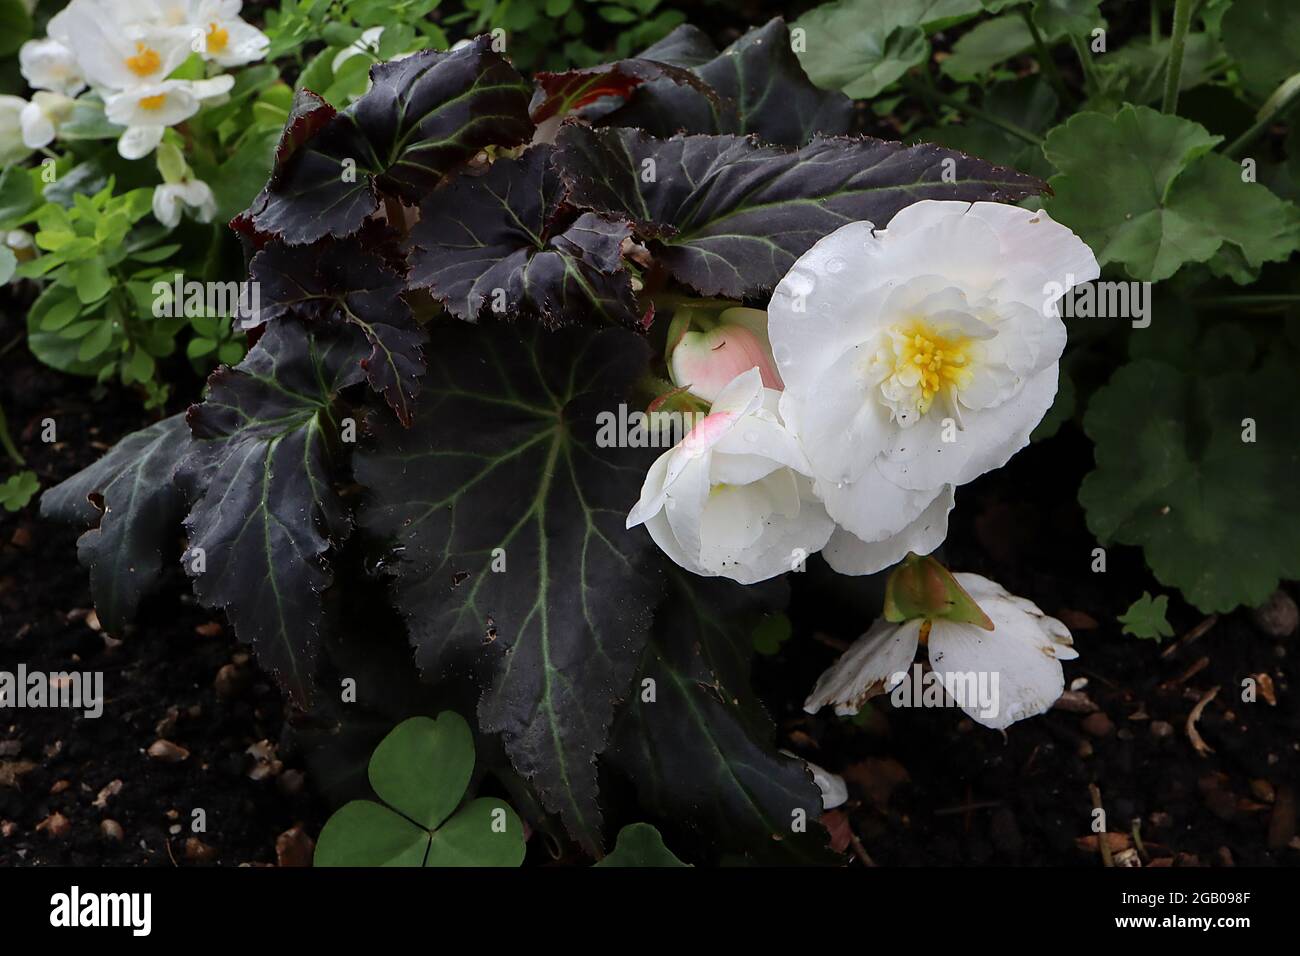 Begonia ‘Nonstop Joy Mocca White’ deux fleurs blanches et des feuilles pourpres en forme d’ange noir aux nervures vertes, juin, Angleterre, Royaume-Uni Banque D'Images